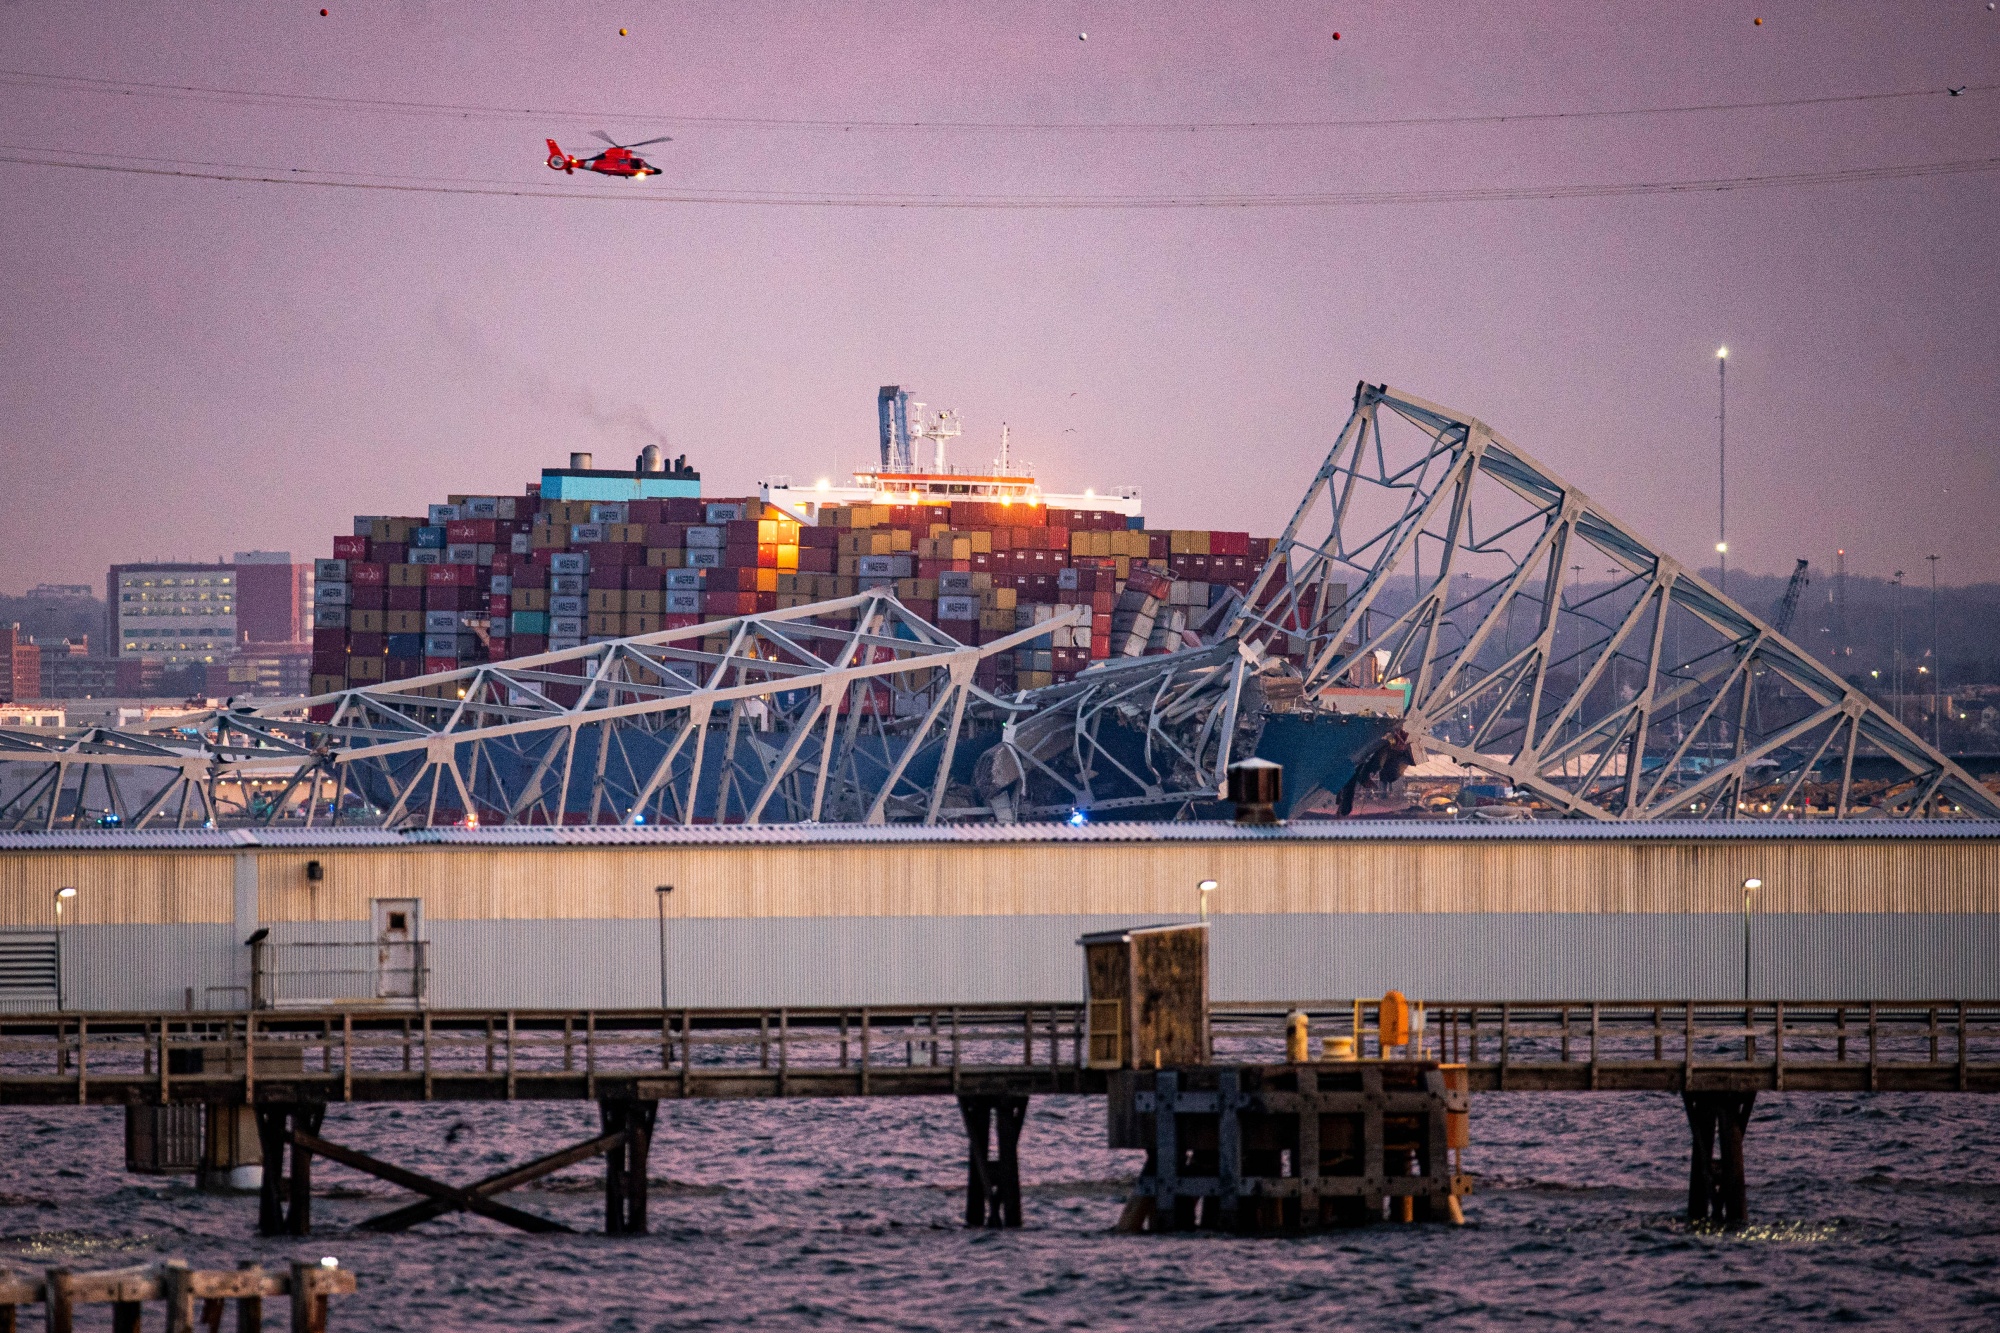 Veprim i qëllimshëm?! Anija me 10 mijë kontenierë shembi urën në SHBA